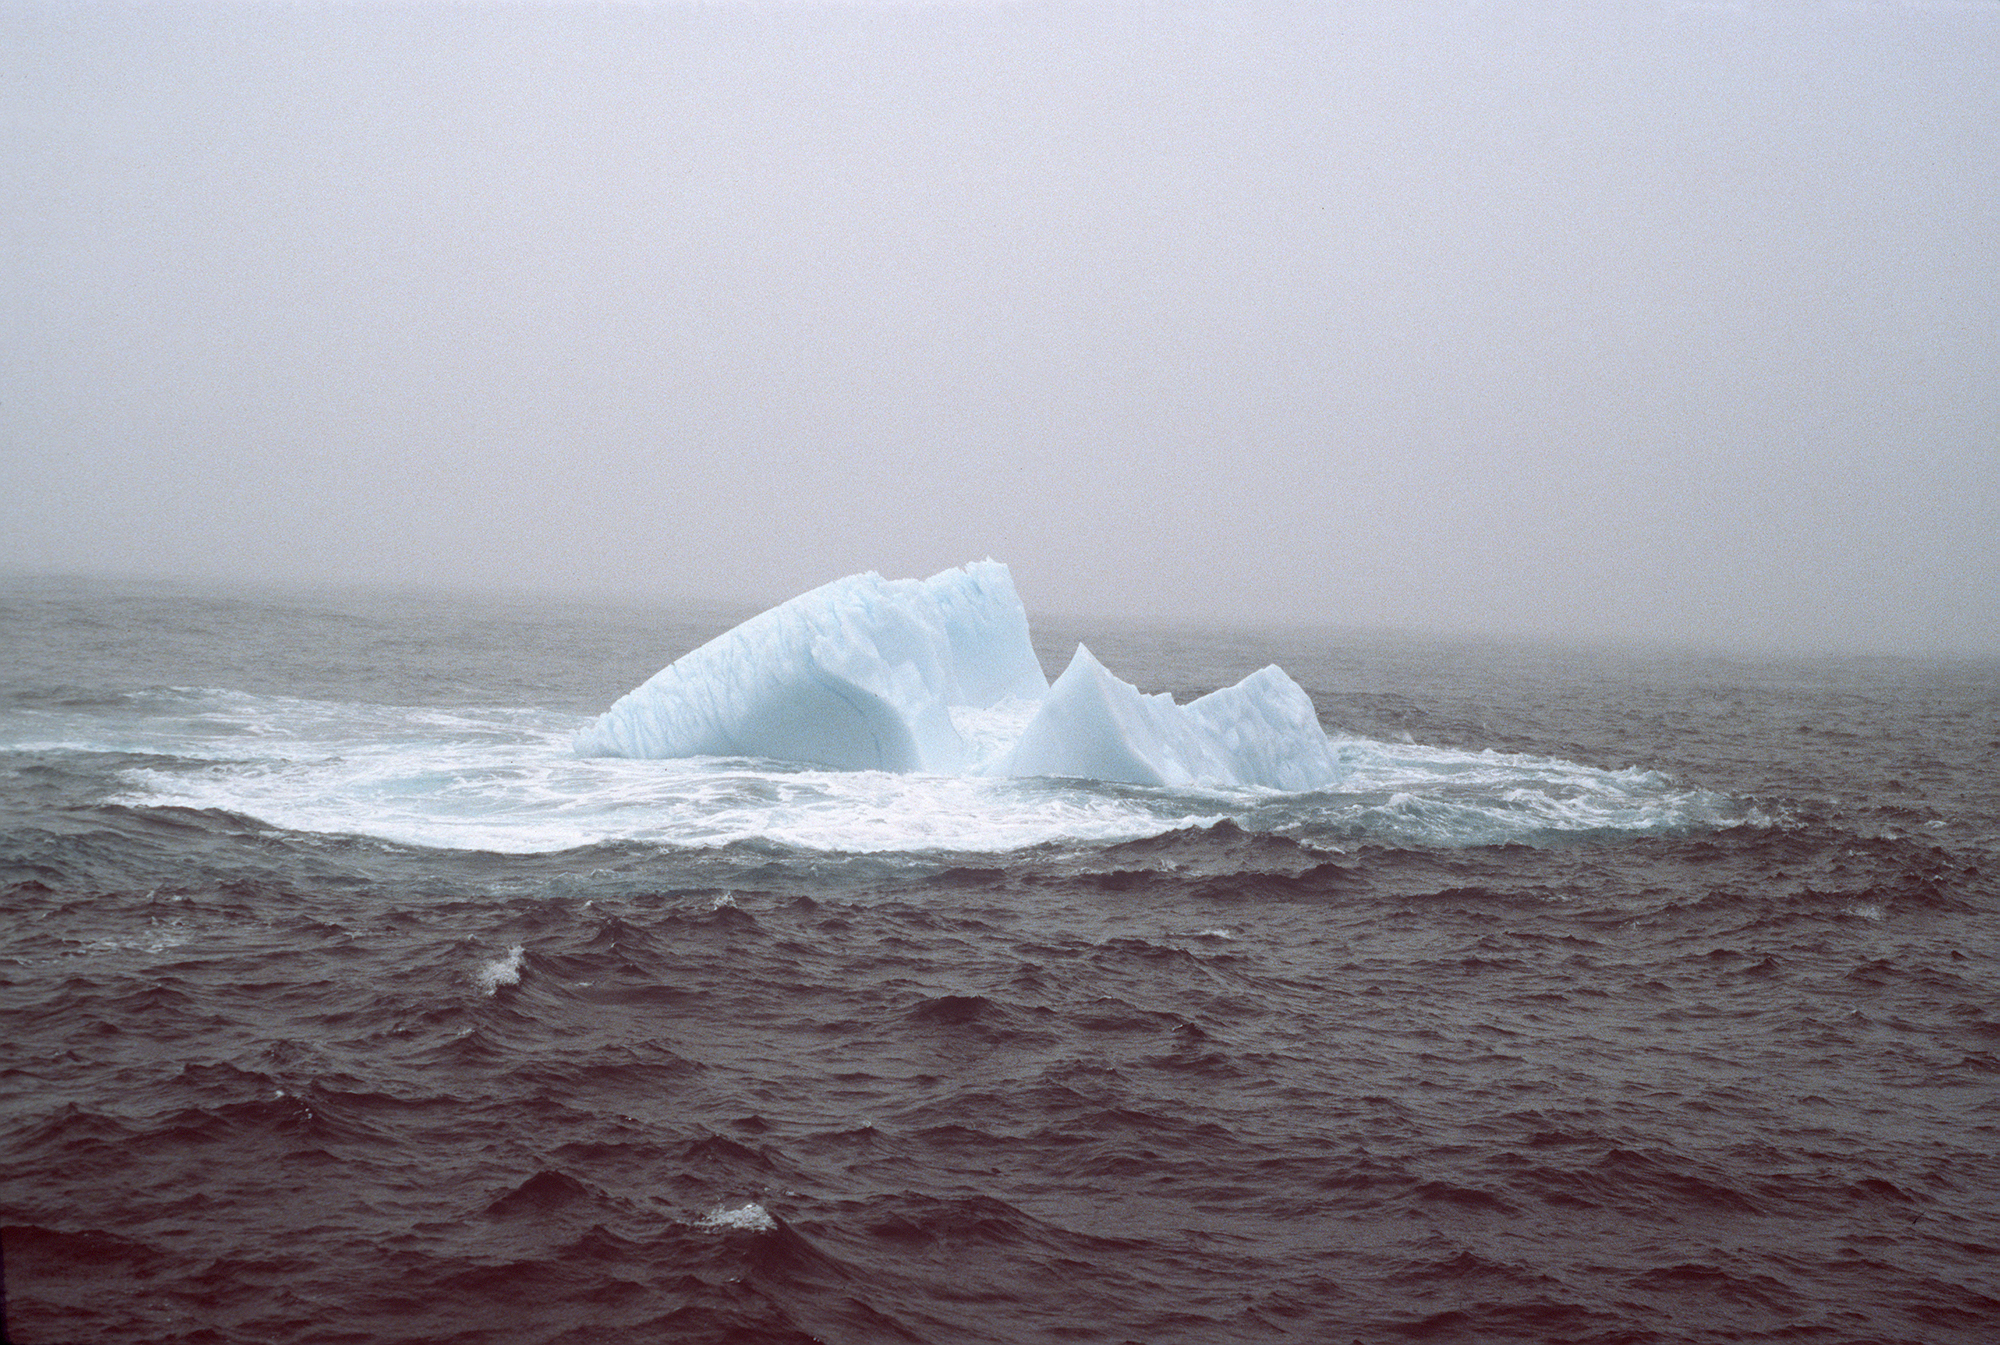 NASA - Breaking the Ice on Icebergs